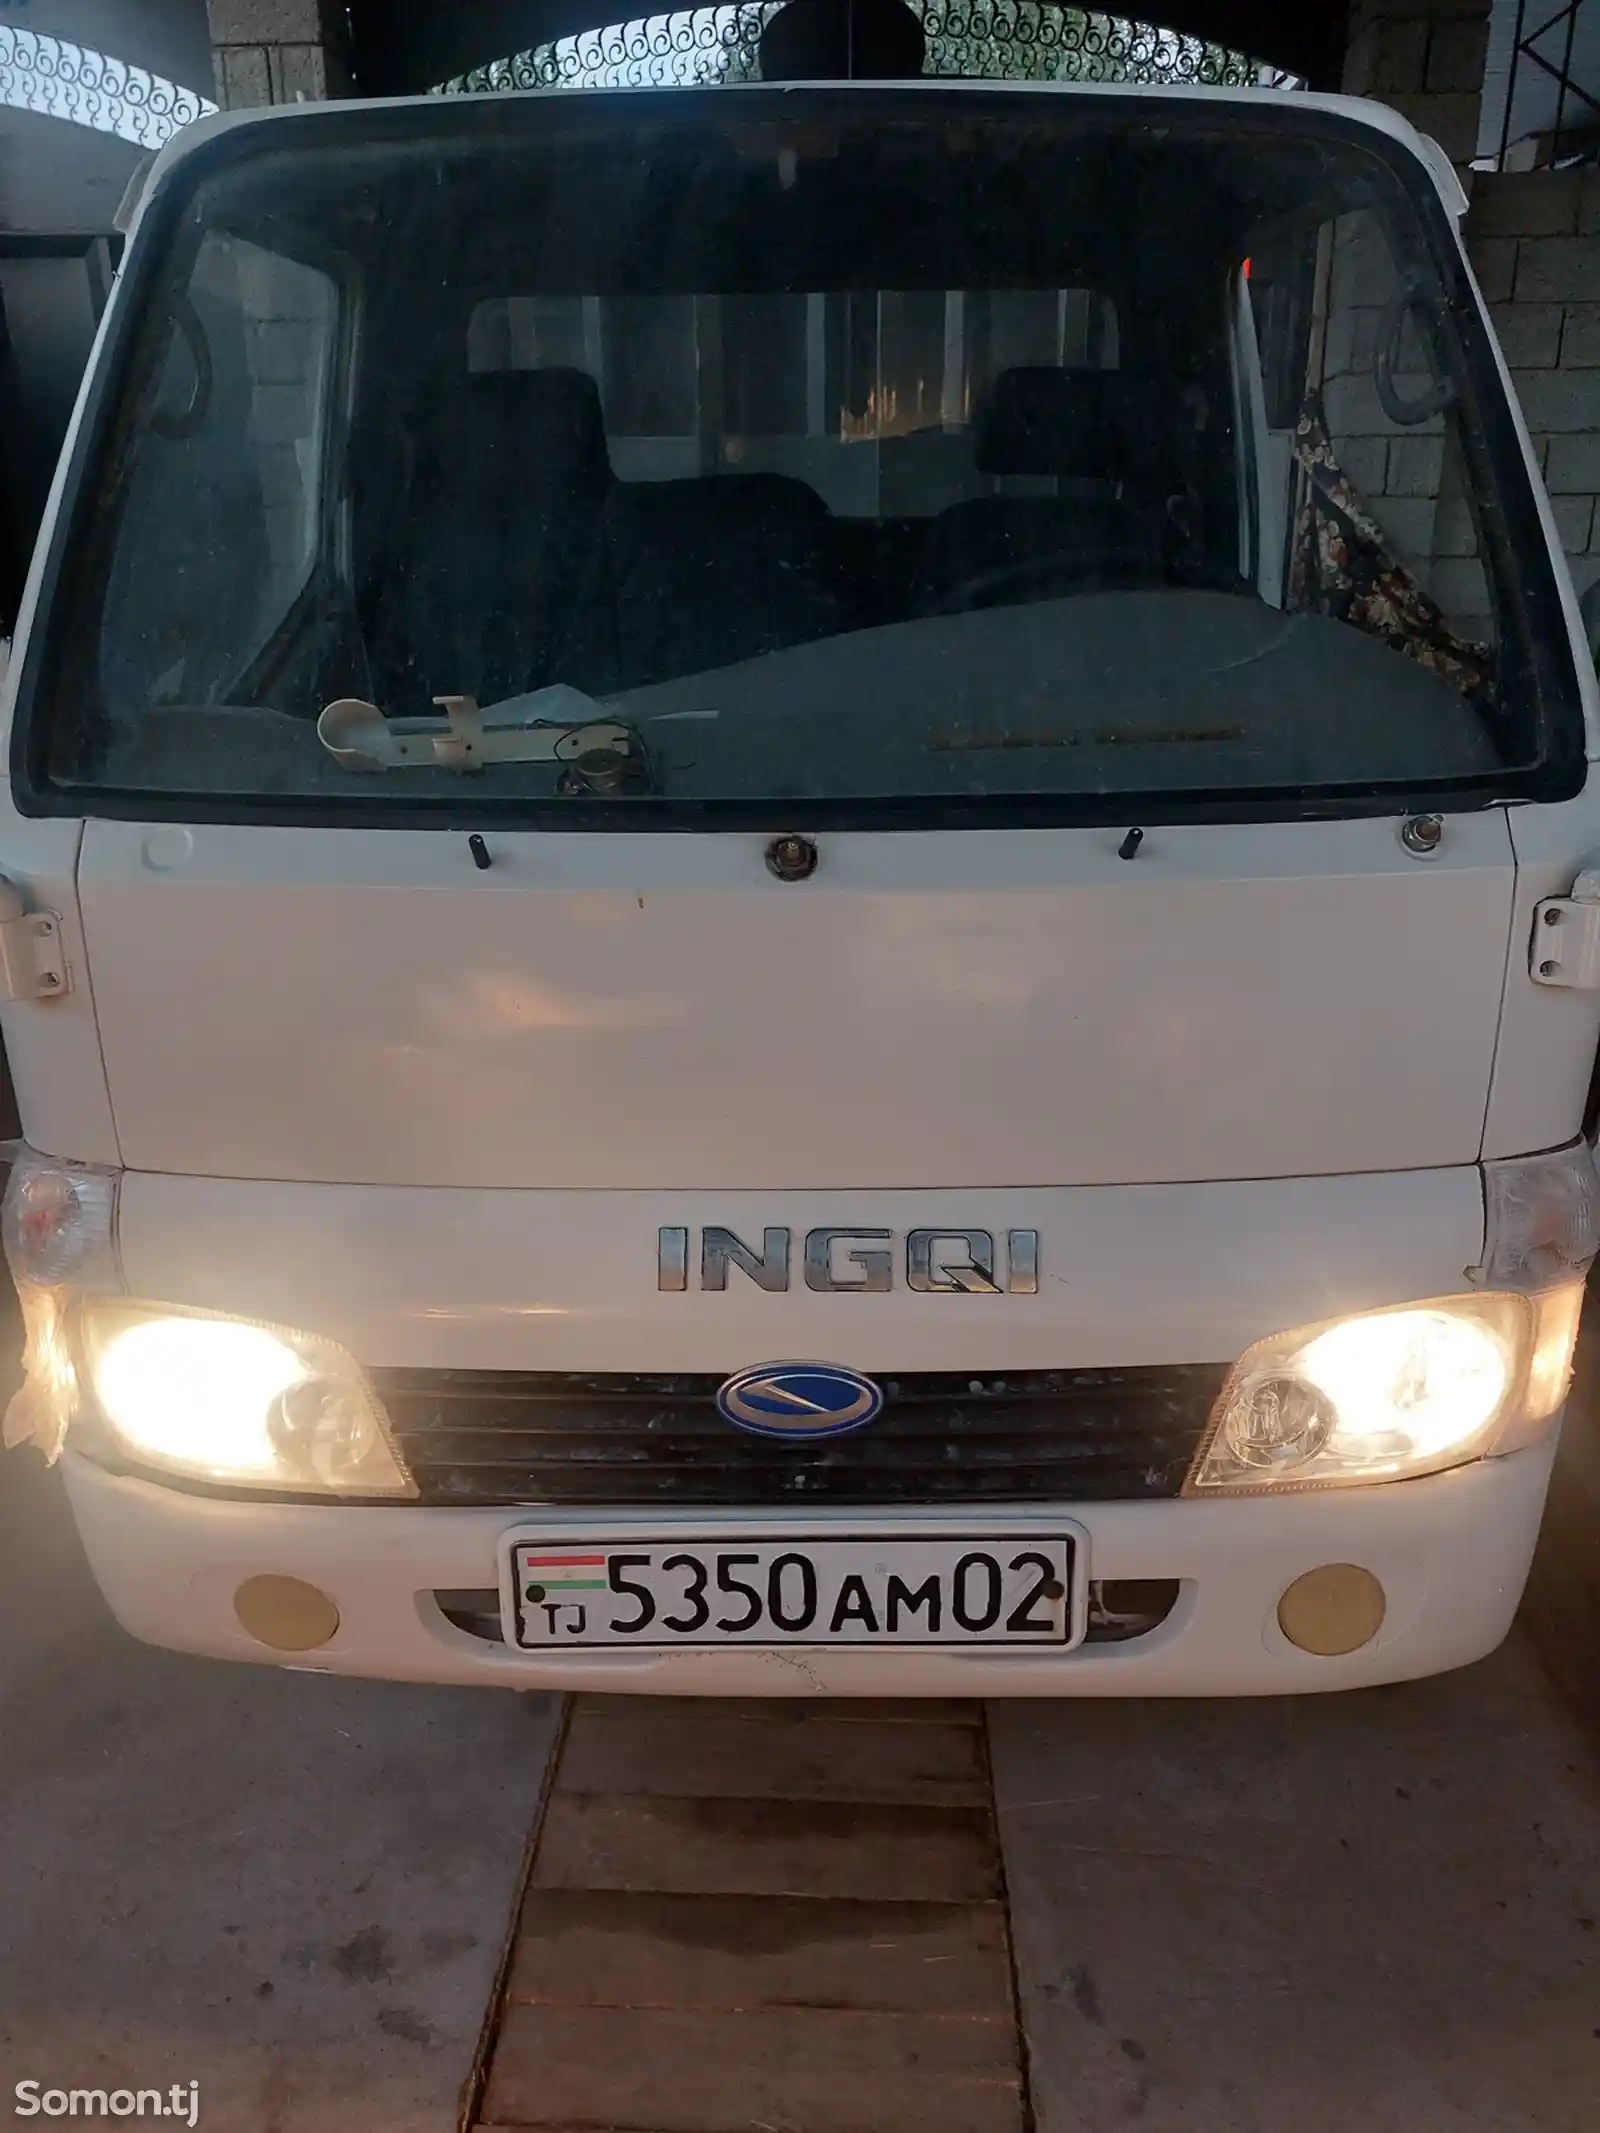 Бортовой автомобиль INGQI, 2005-2